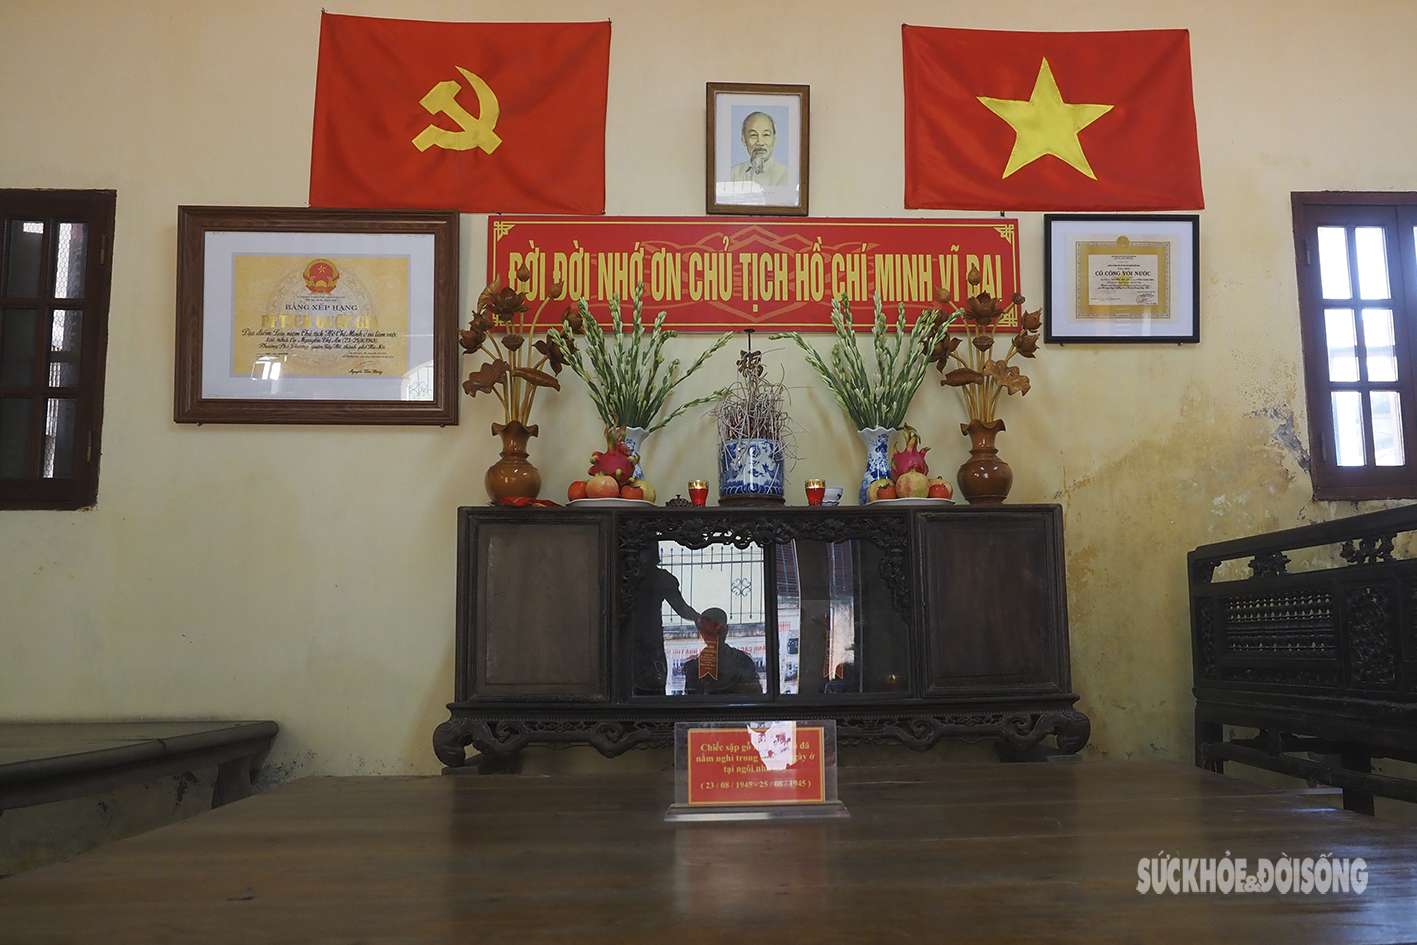 Nhiều kỉ niệm trong ngôi nhà hai lần đón Bác Hồ ở Phú Thượng - Ảnh 2.